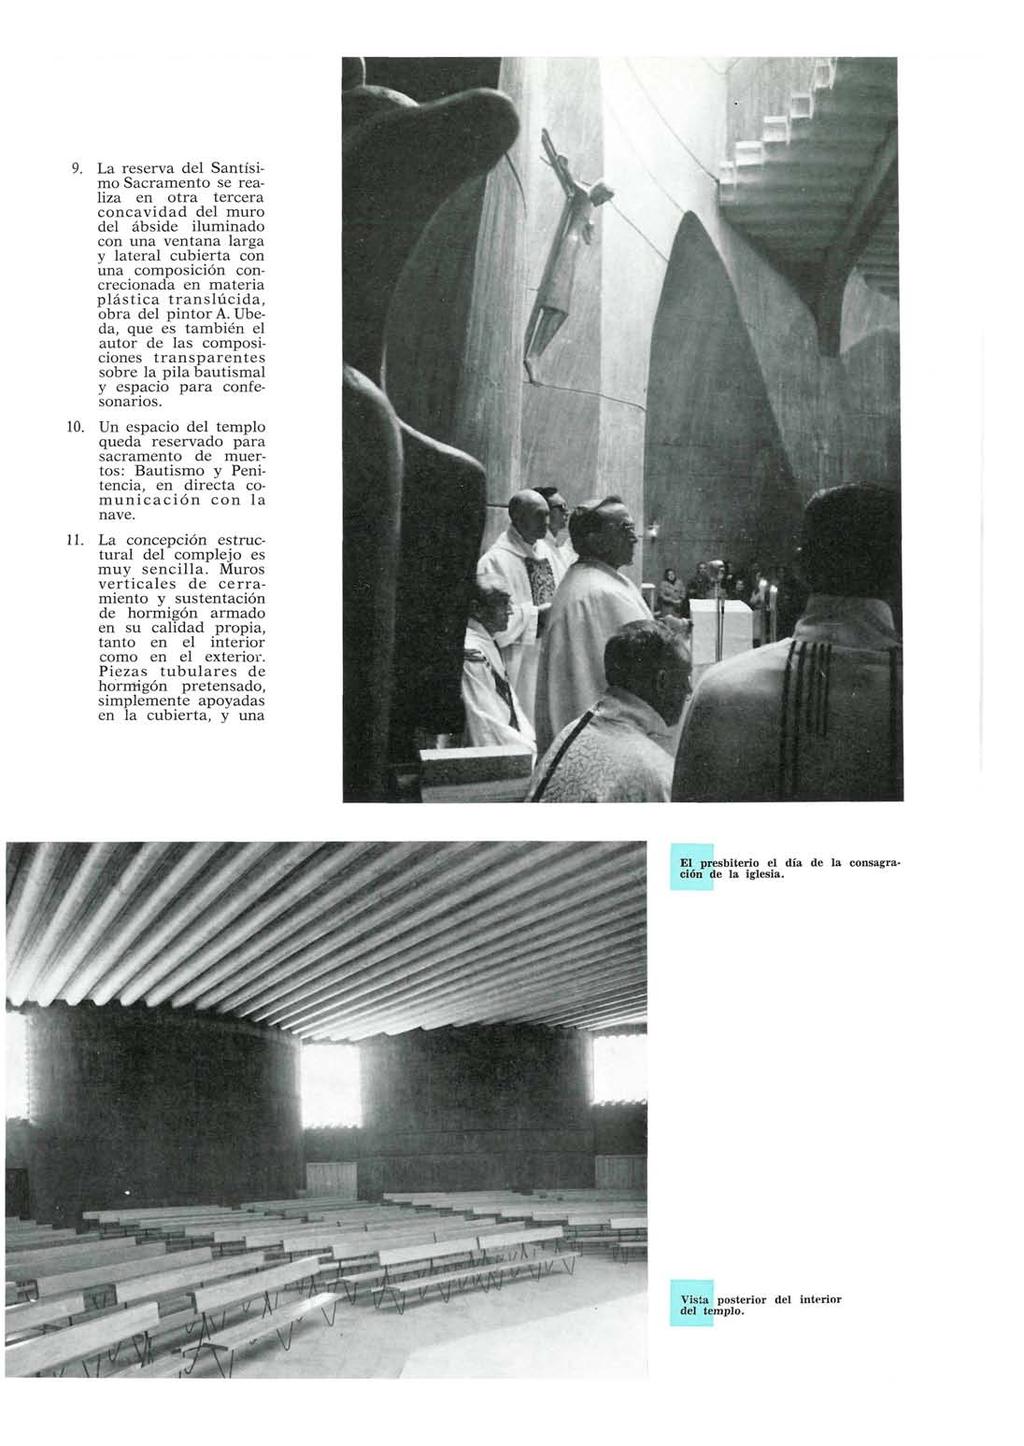 9. La reserva del Santísimo Sacramento se realiza en otra tercera concavidad del muro del ábside iluminado con una ventana larga y lateral cubierta con una composición concrecionada en materia